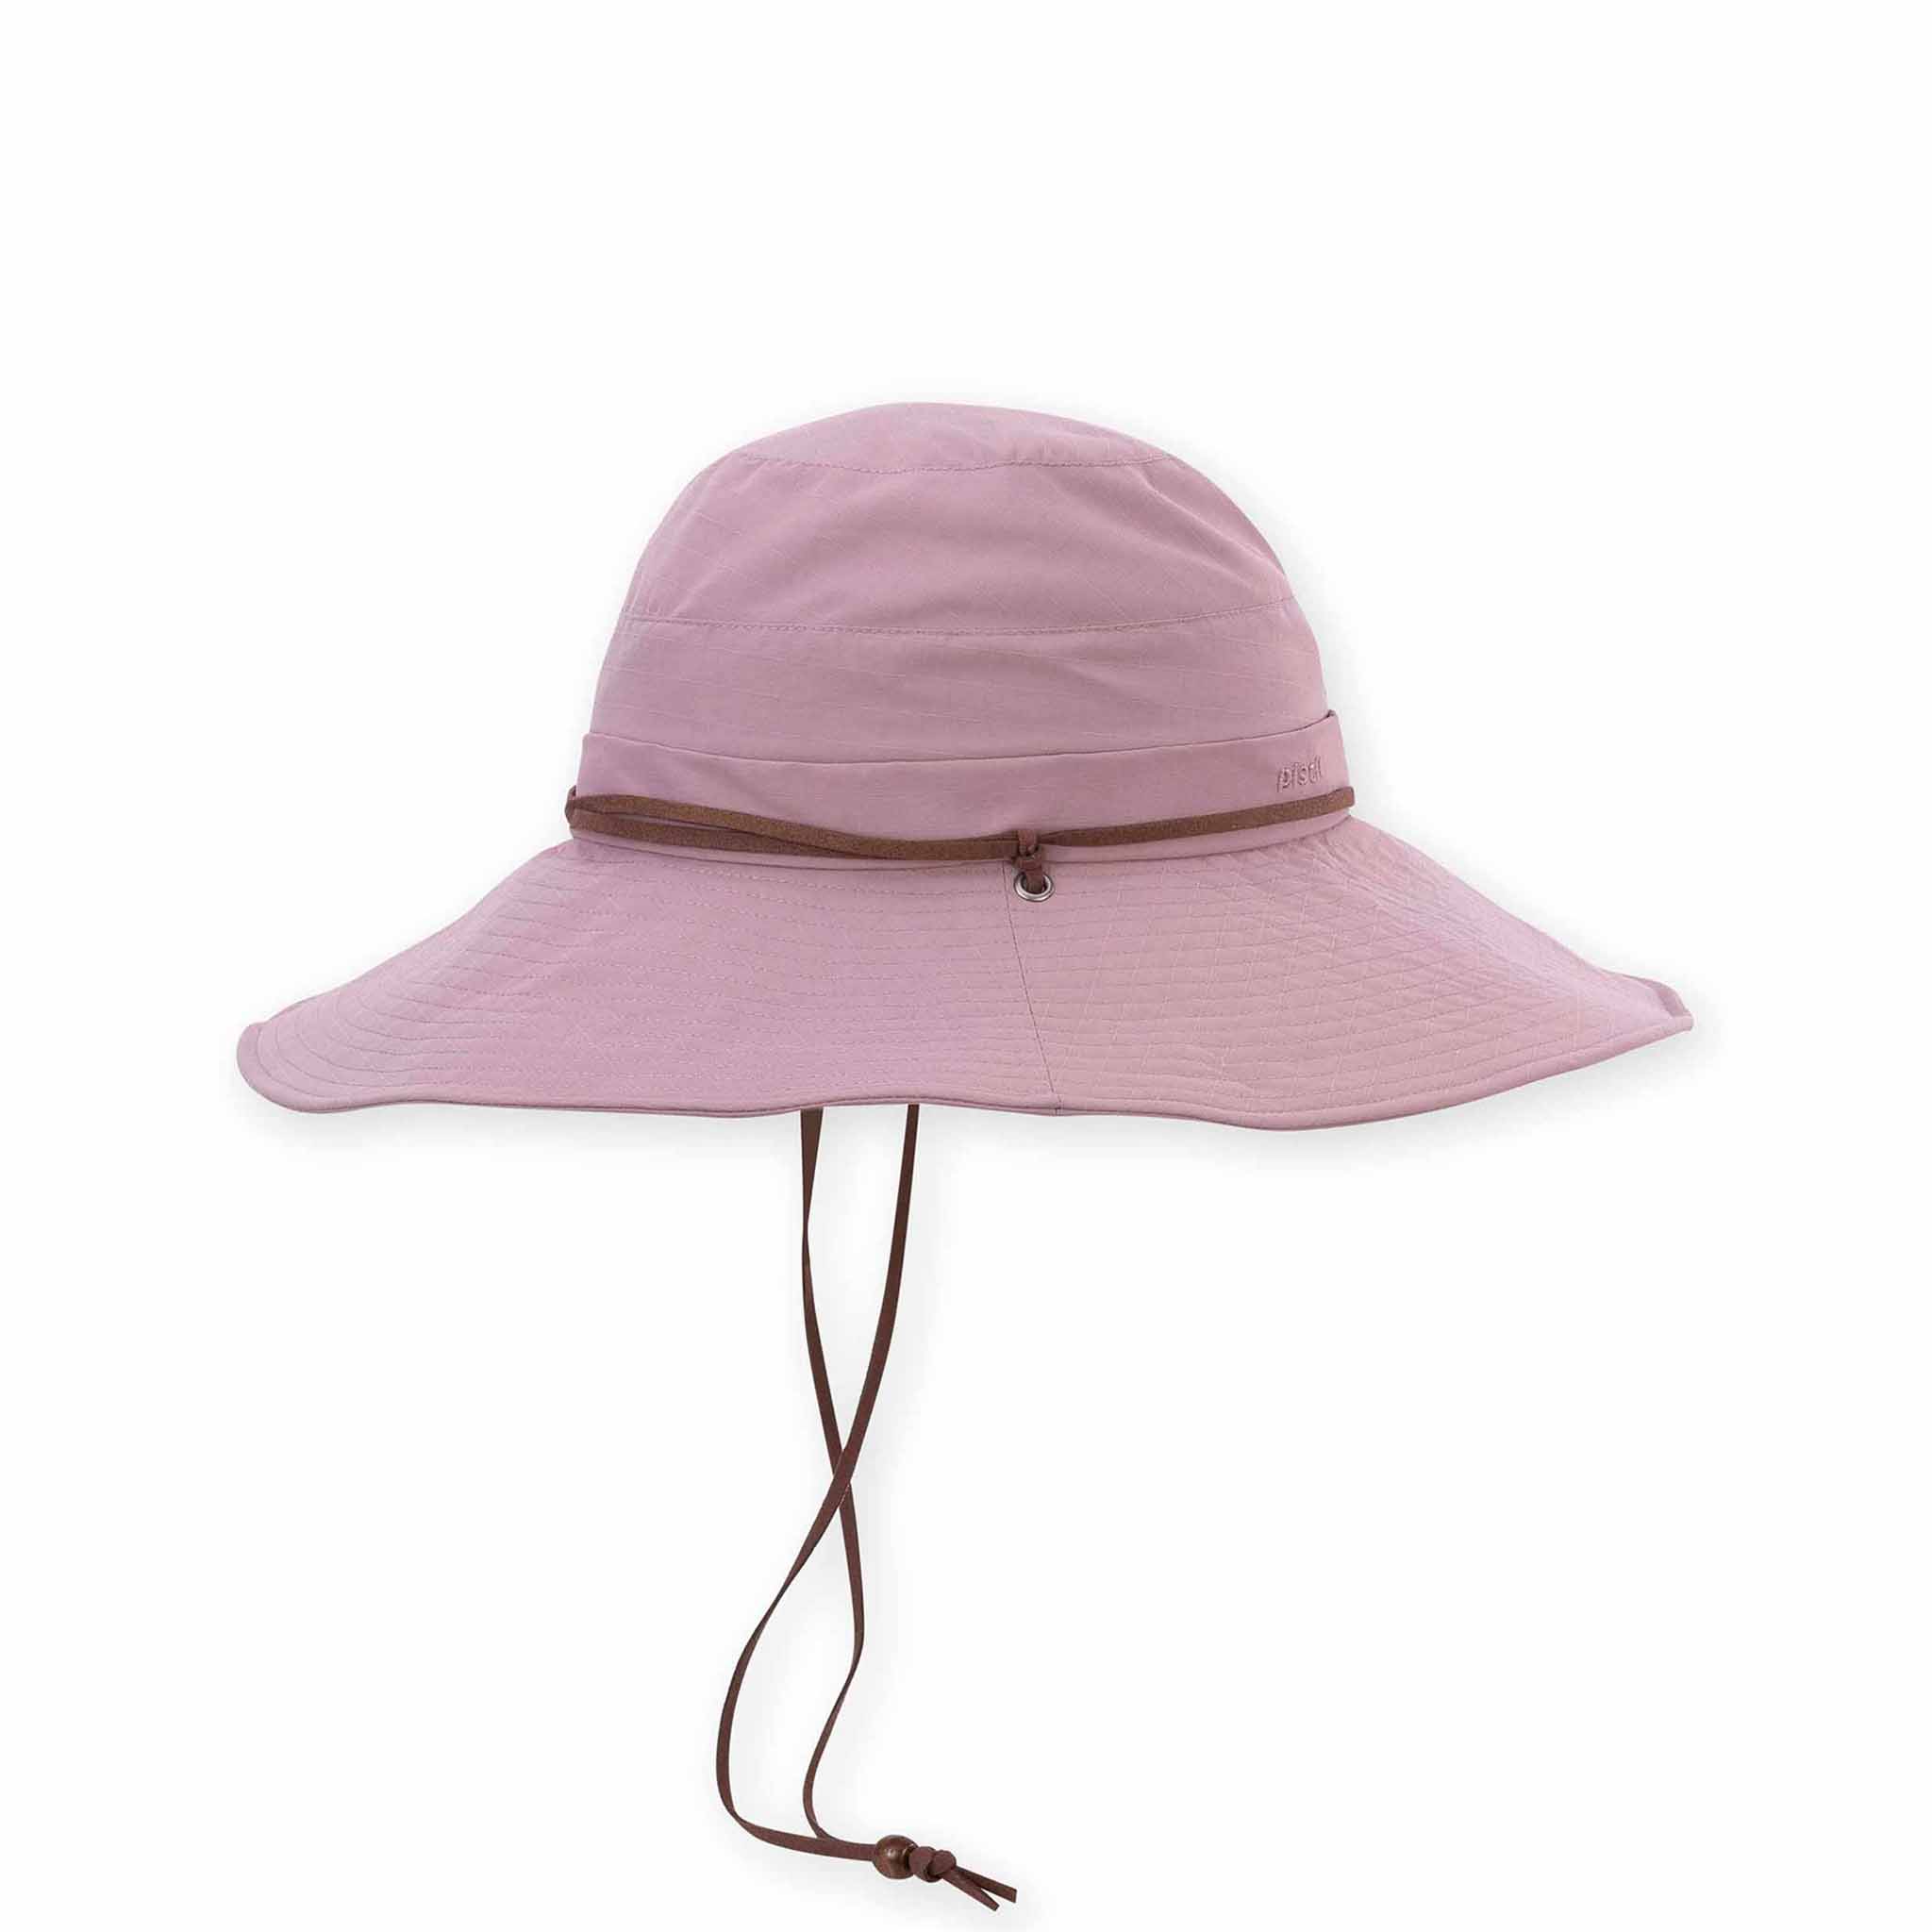 Women's Safari Hats: High UPF Sun Protection